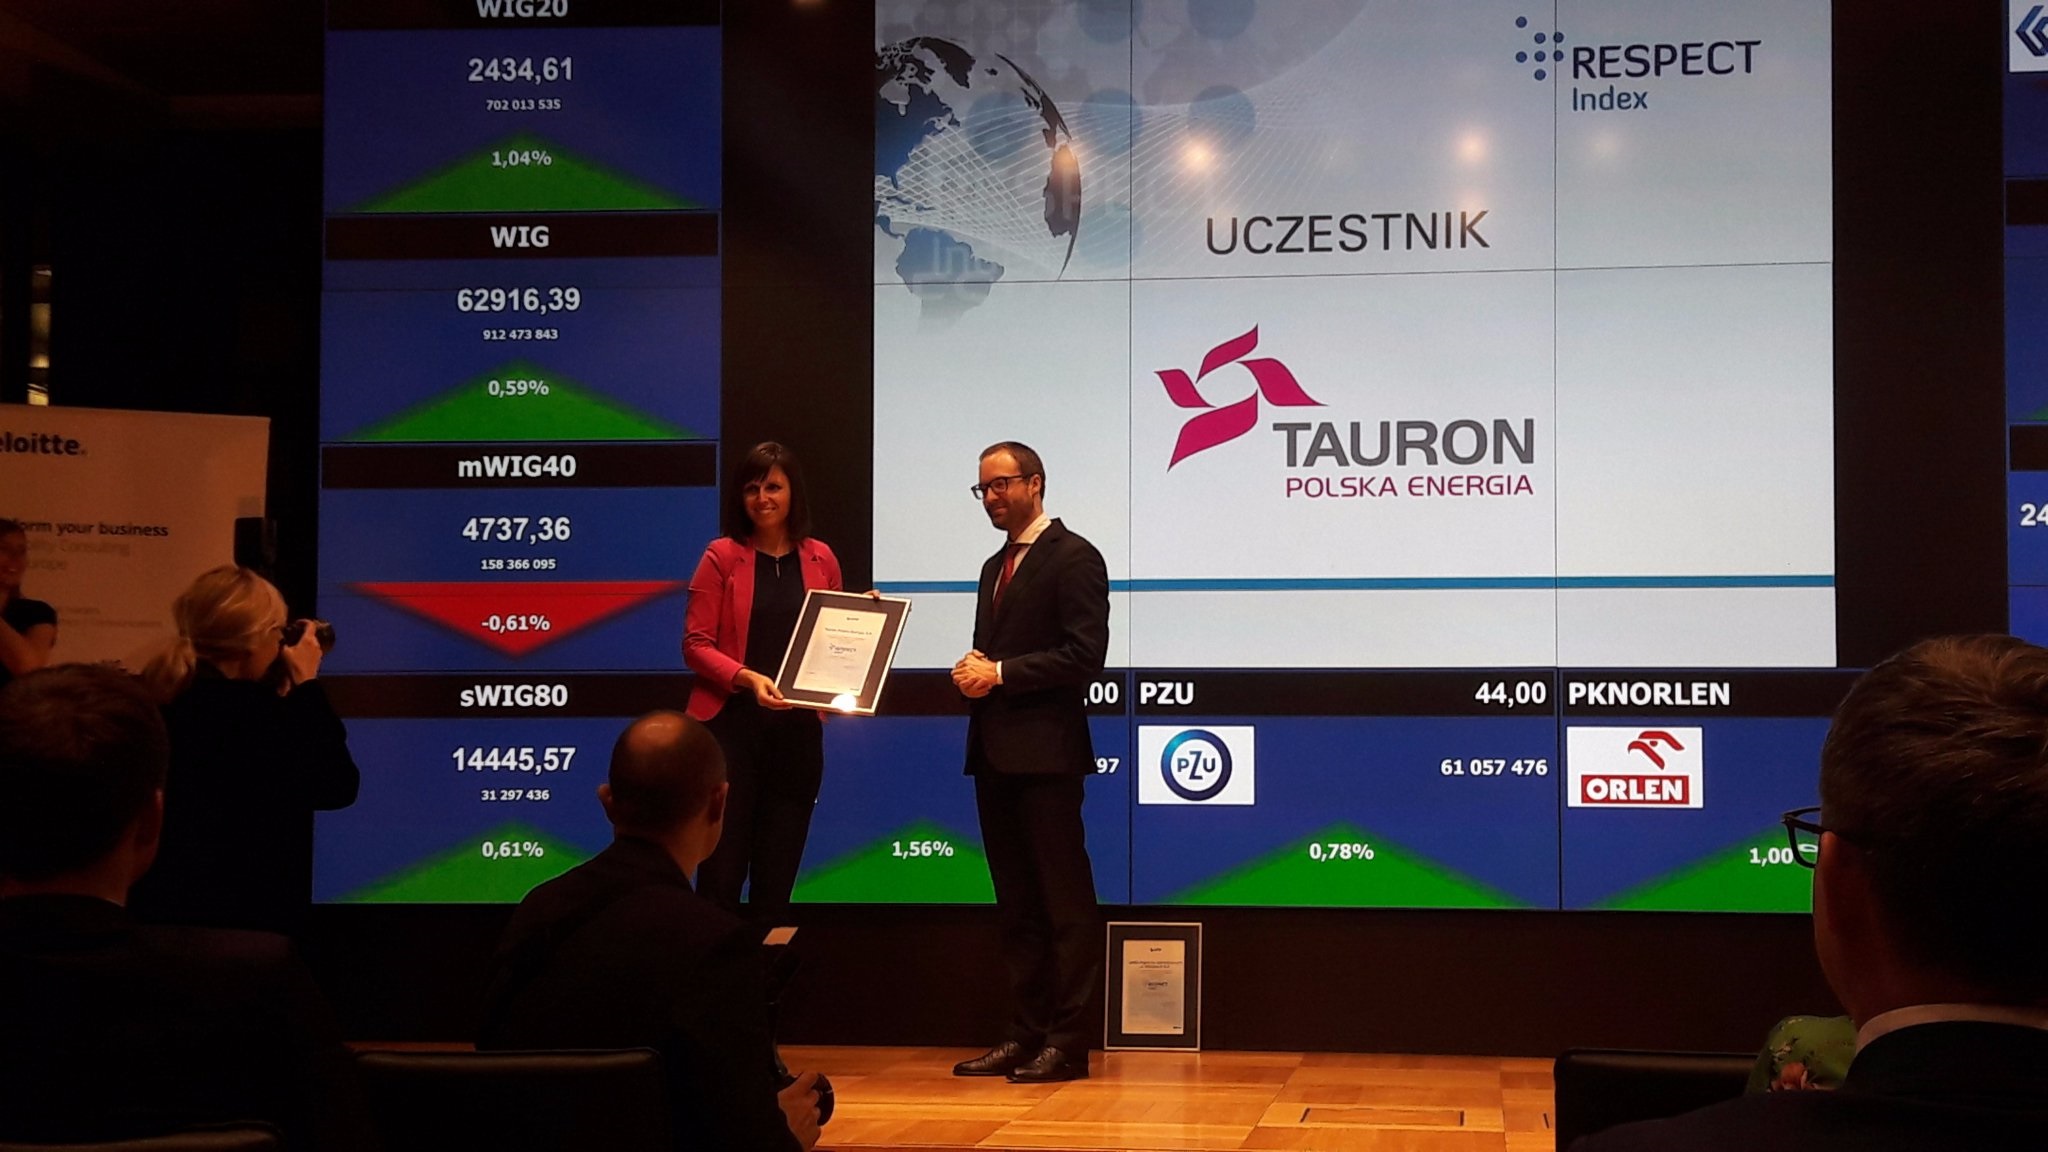 TAURON Polska Energia wchodzi w skład RESPECT Index. Fot. Tauron, Twitter